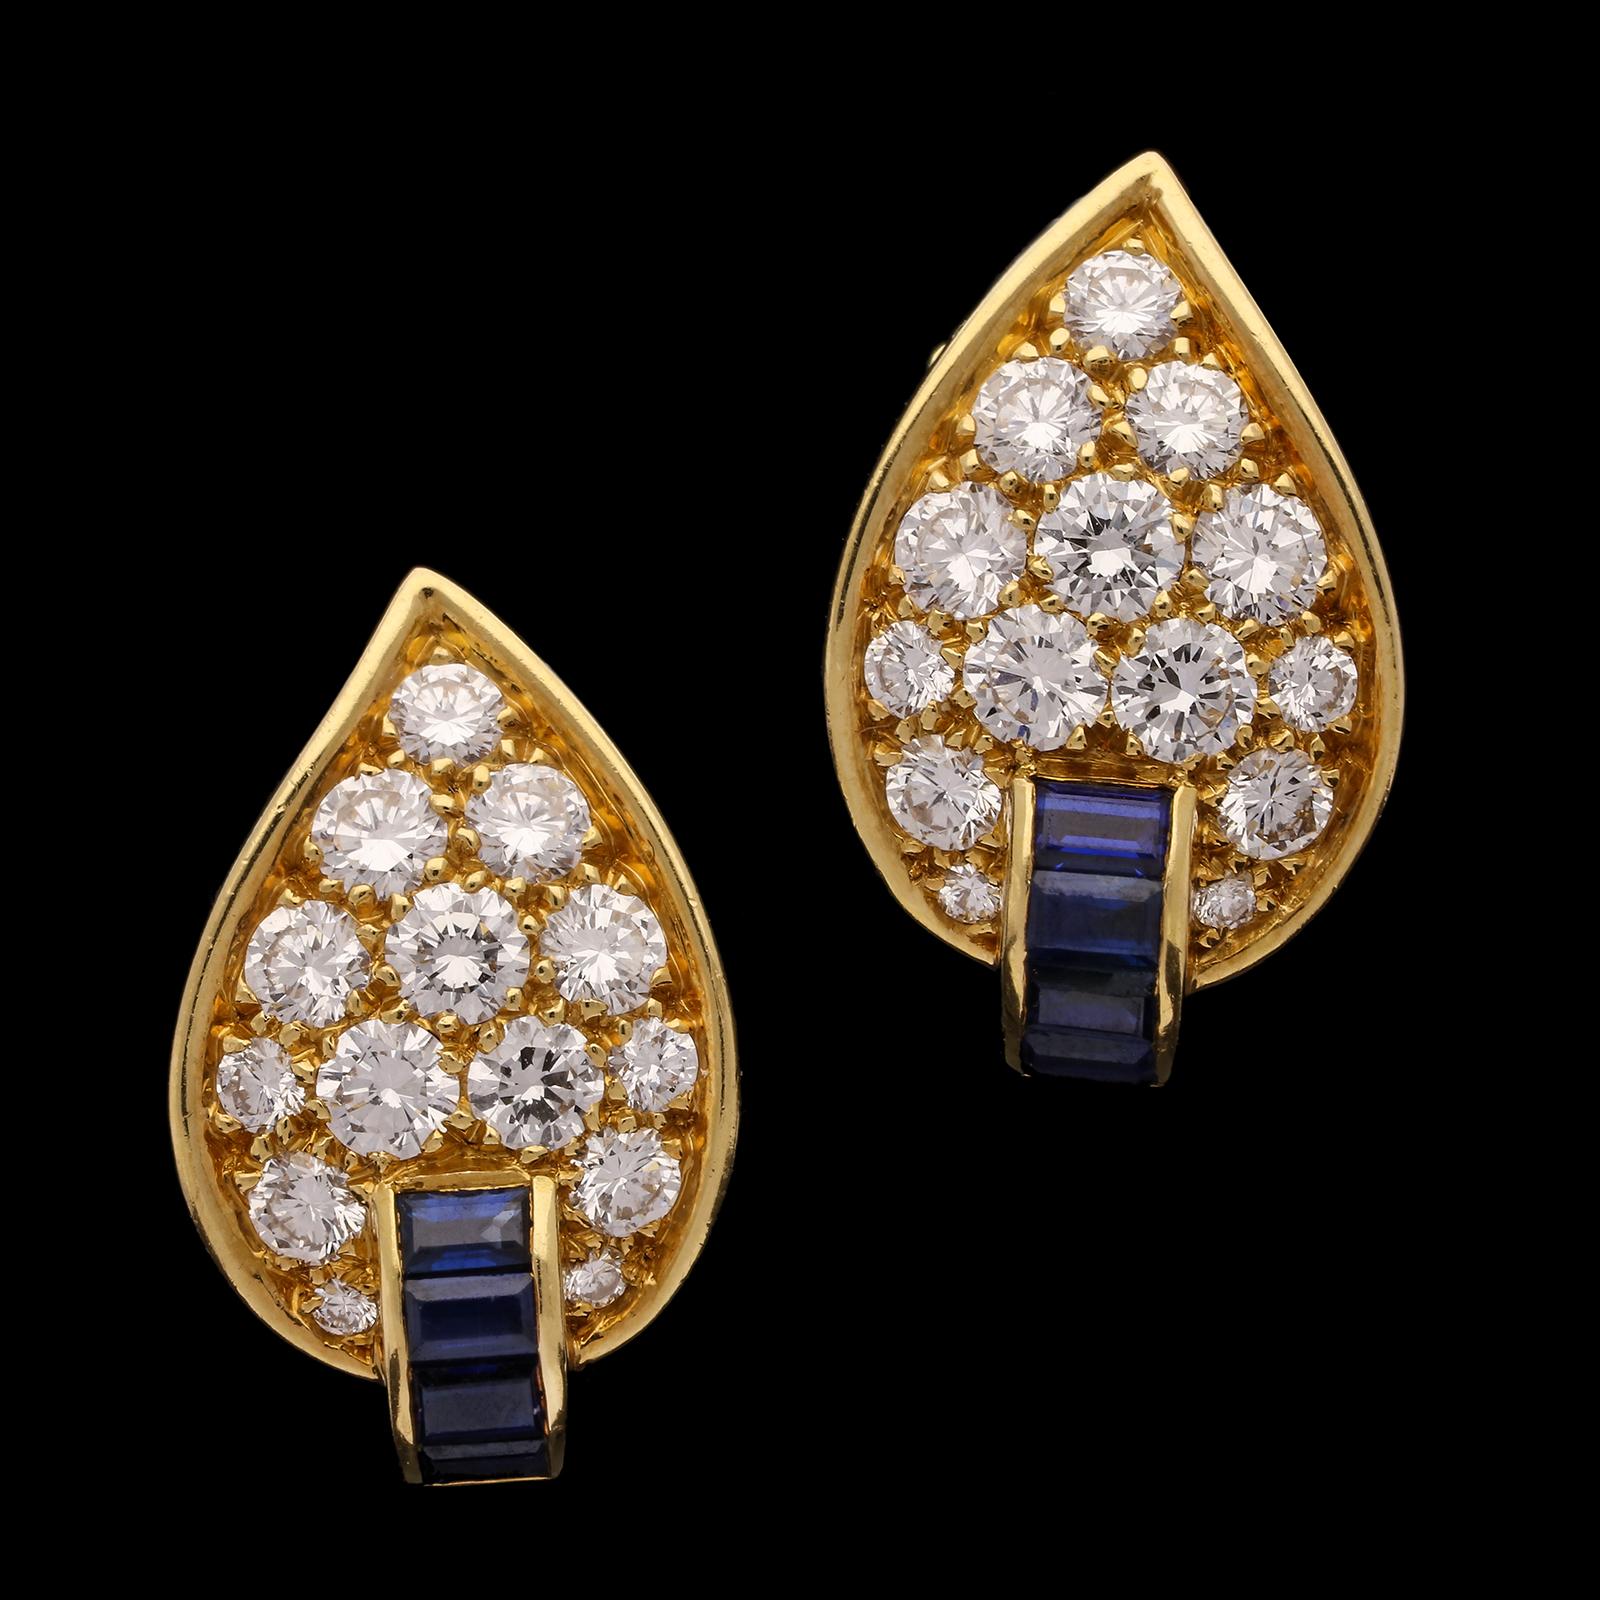 Brilliant Cut Van Cleef & Arpels Chic Pair of Vintage Diamond and Sapphire Leaf Earrings 1970s